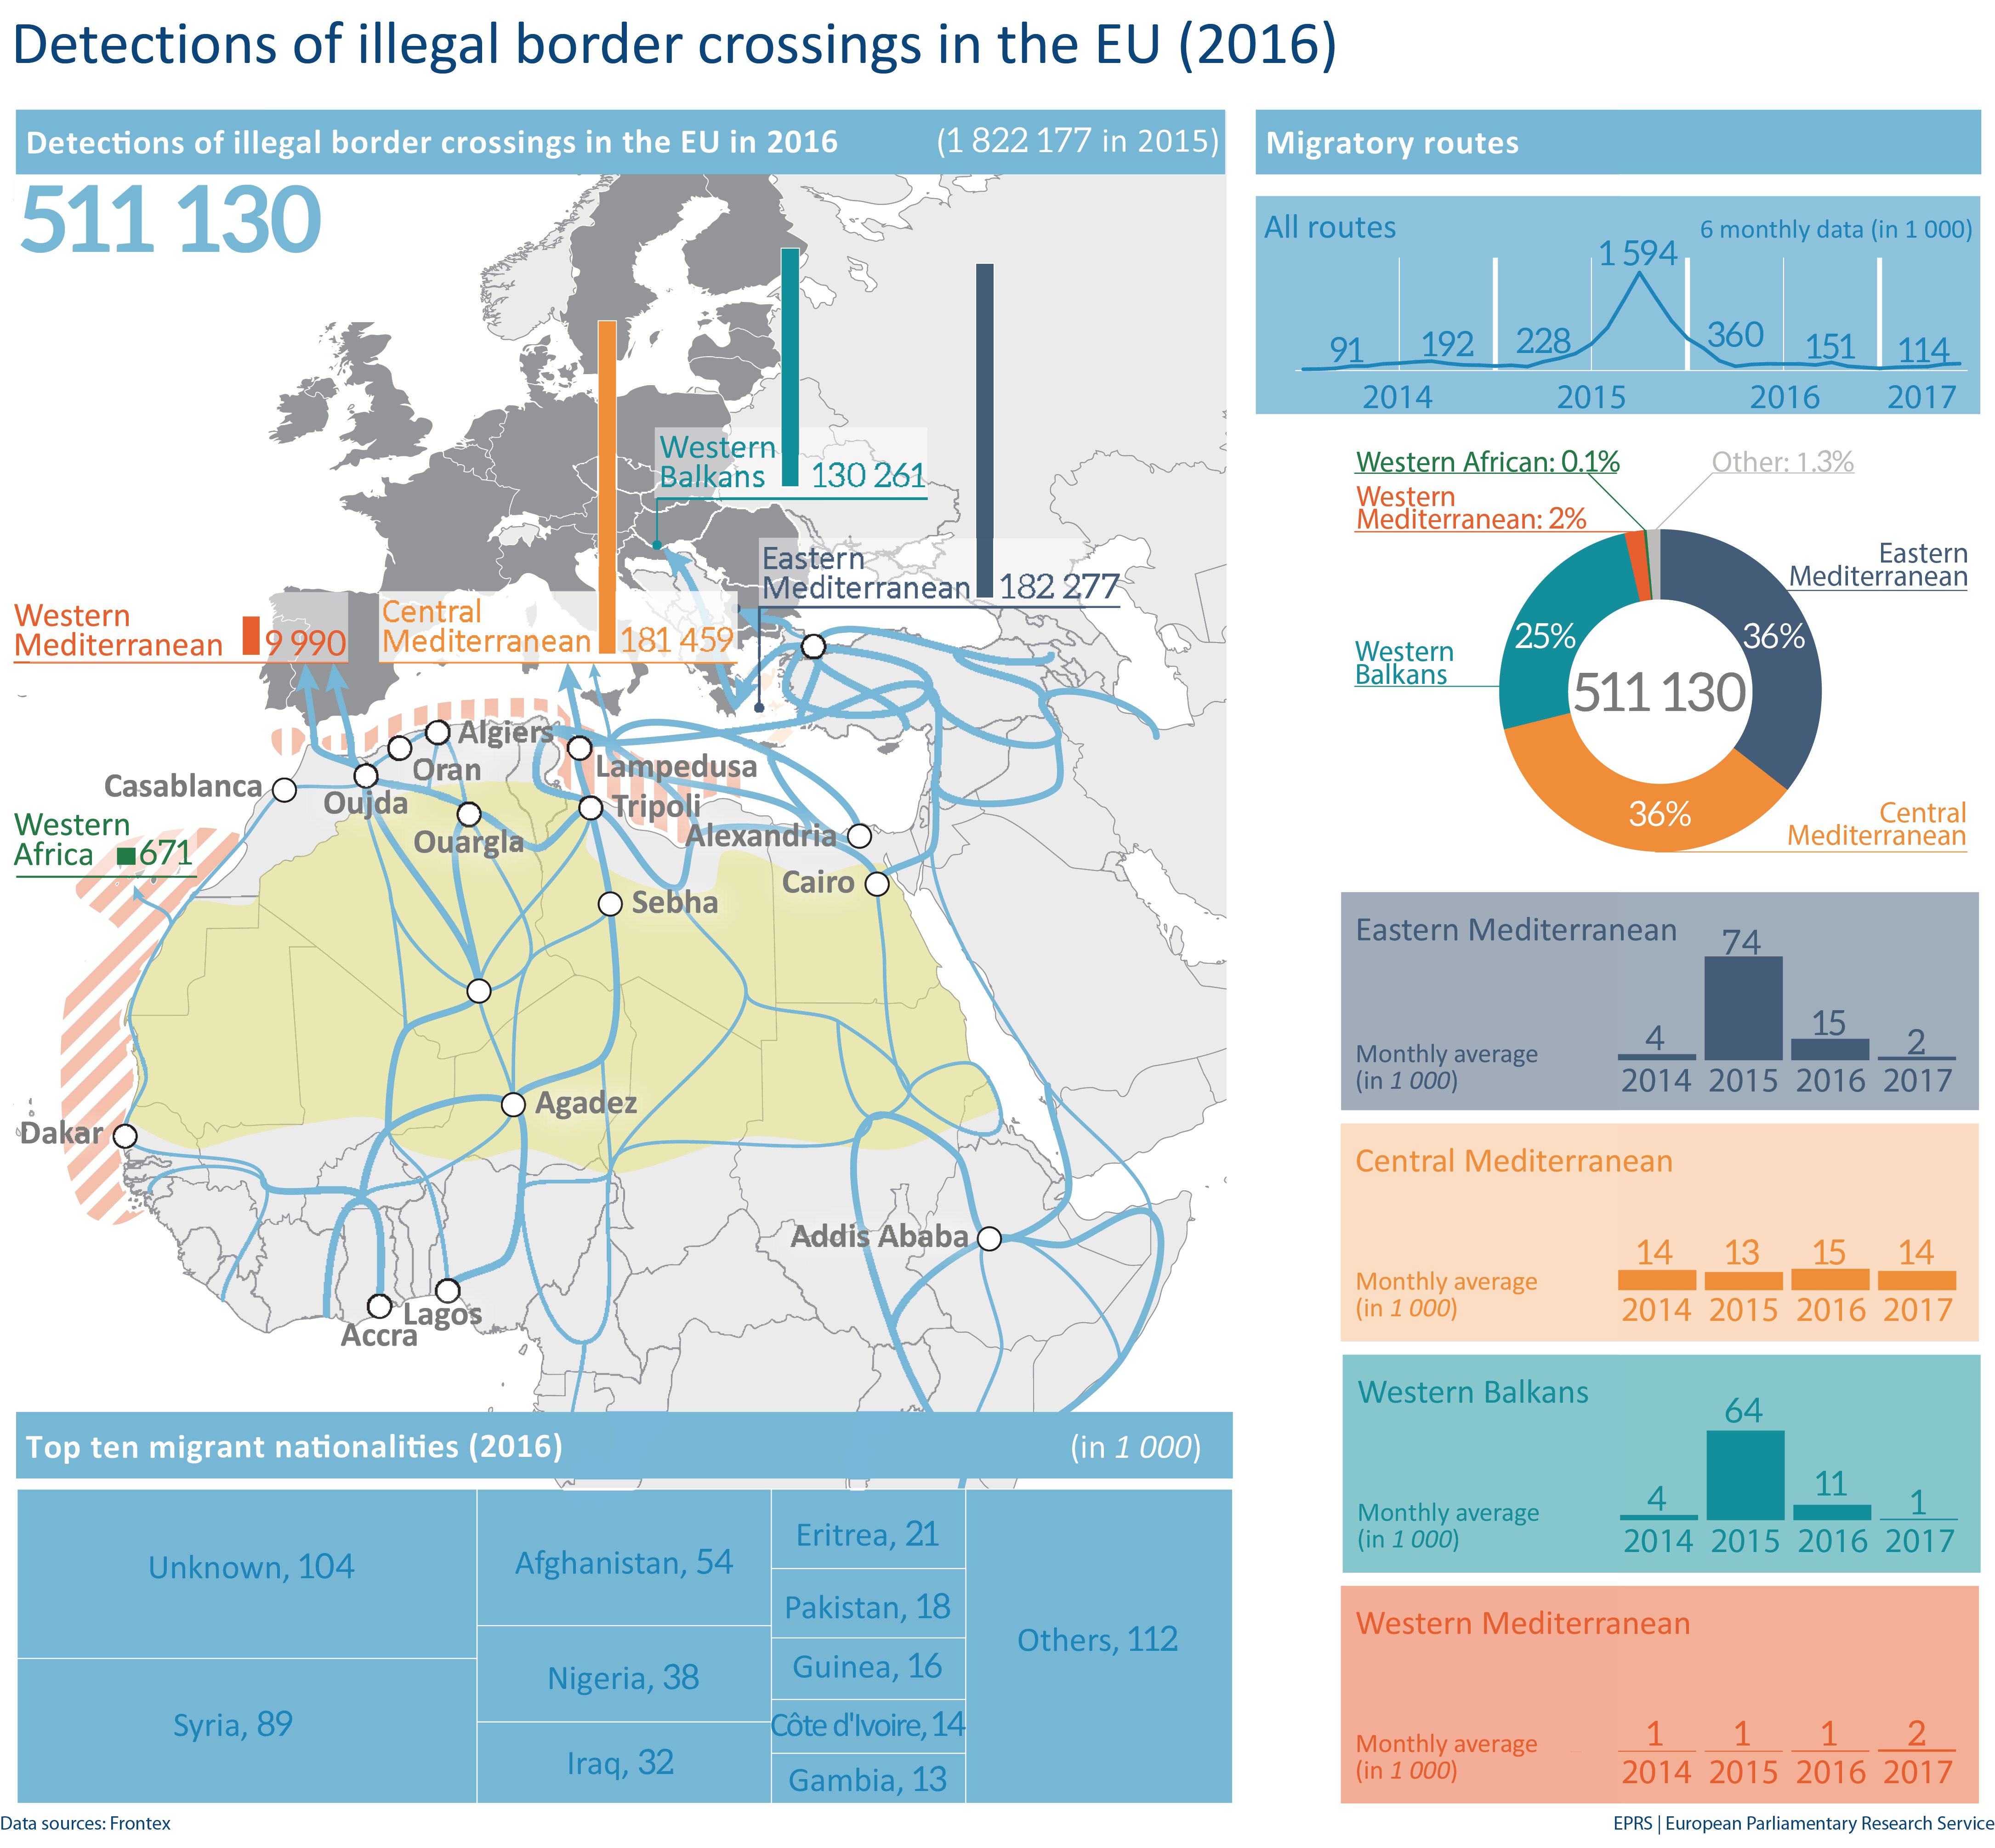 Recent migration flows to the EU